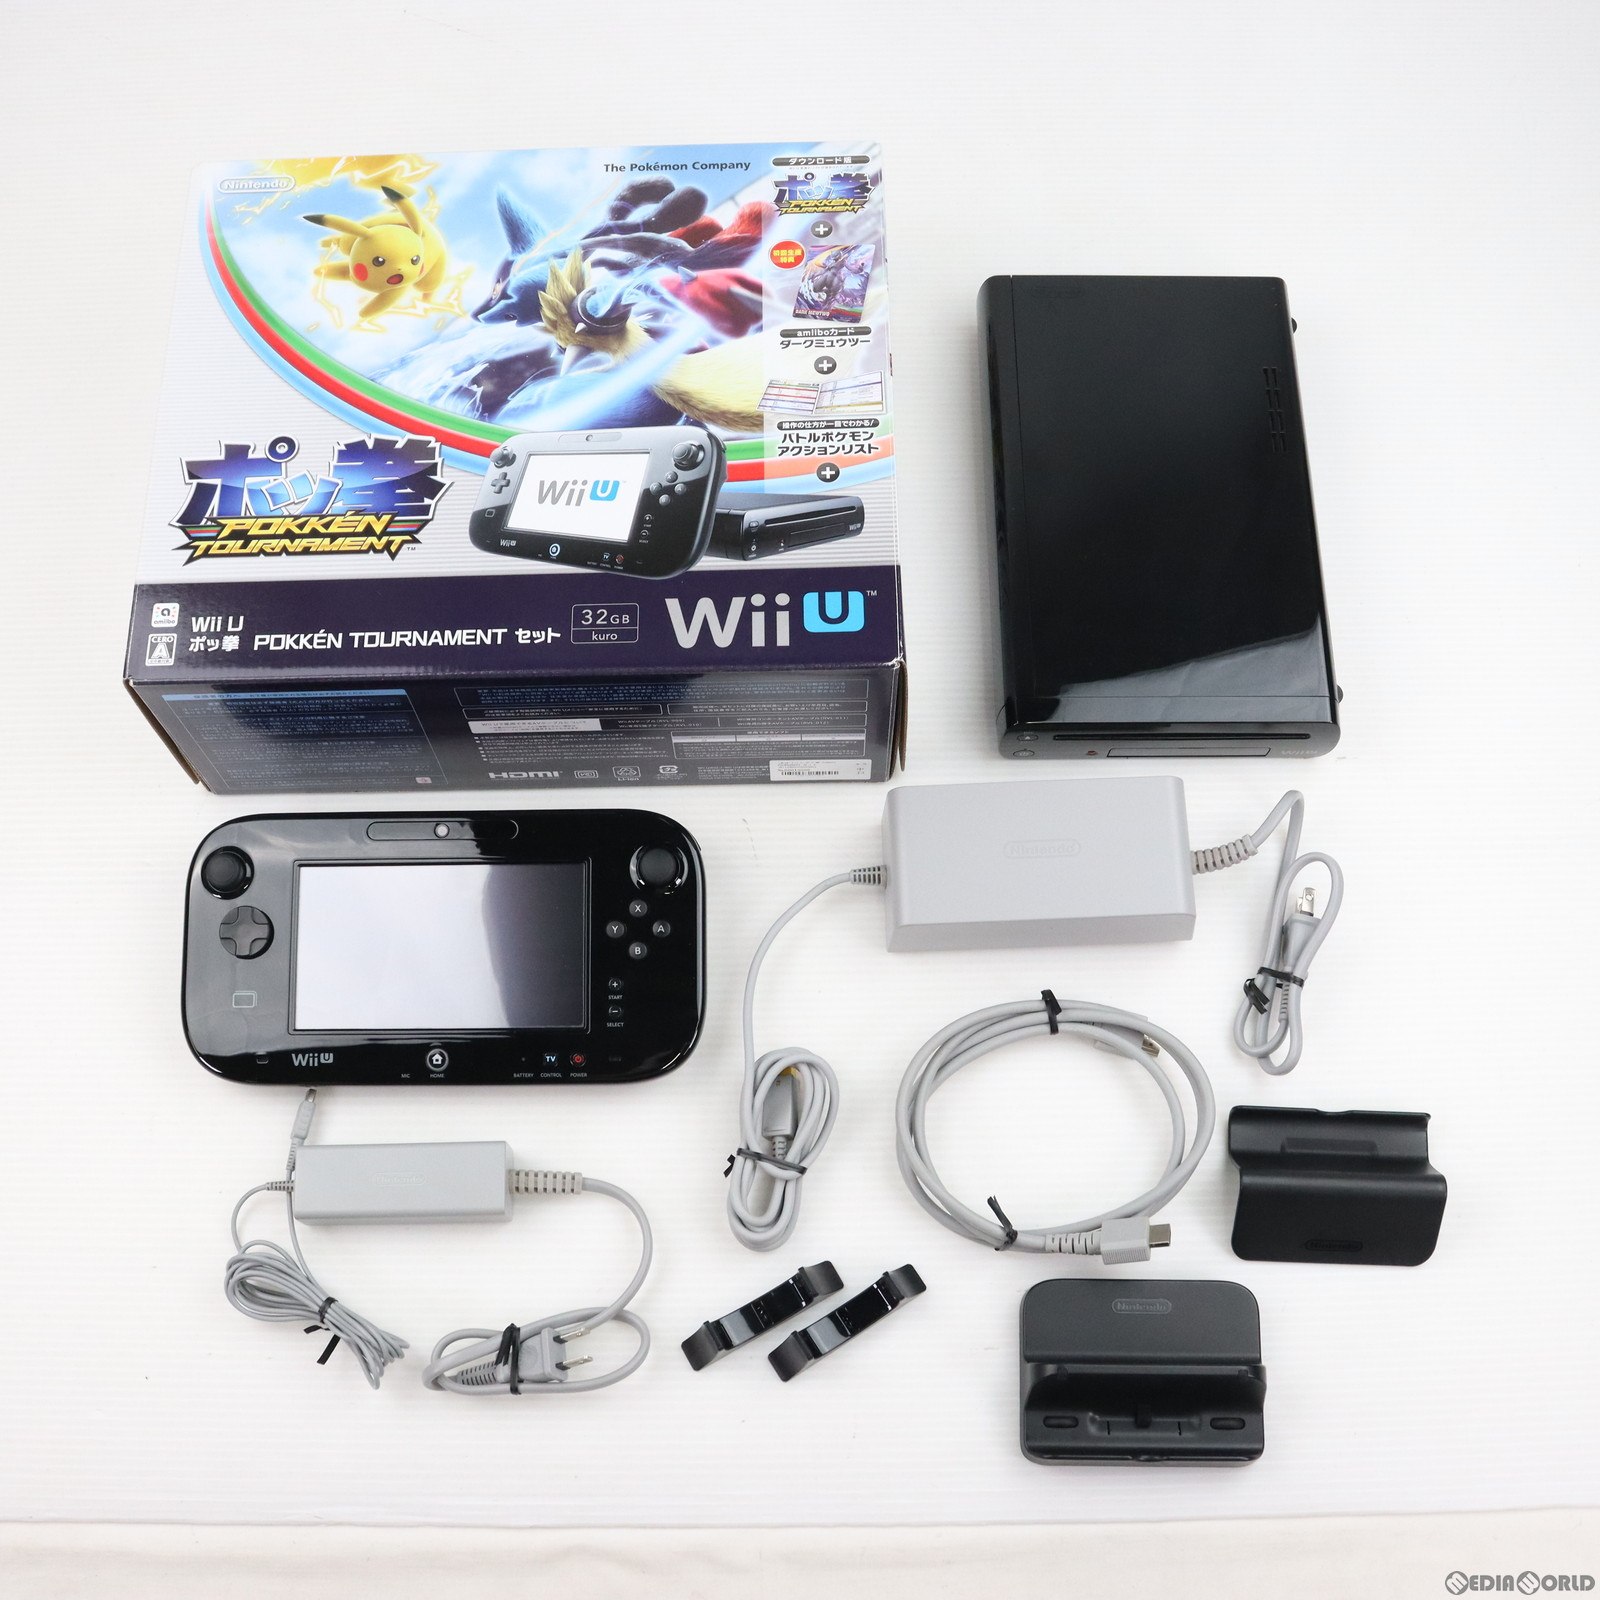 【中古即納】[本体][WiiU]Wii U ポッ拳 POKKEN TOURNAMENT セット(Wii Uプレミアムセット kuro/クロ/黒)(WUP-S-KAHR)(20160318)